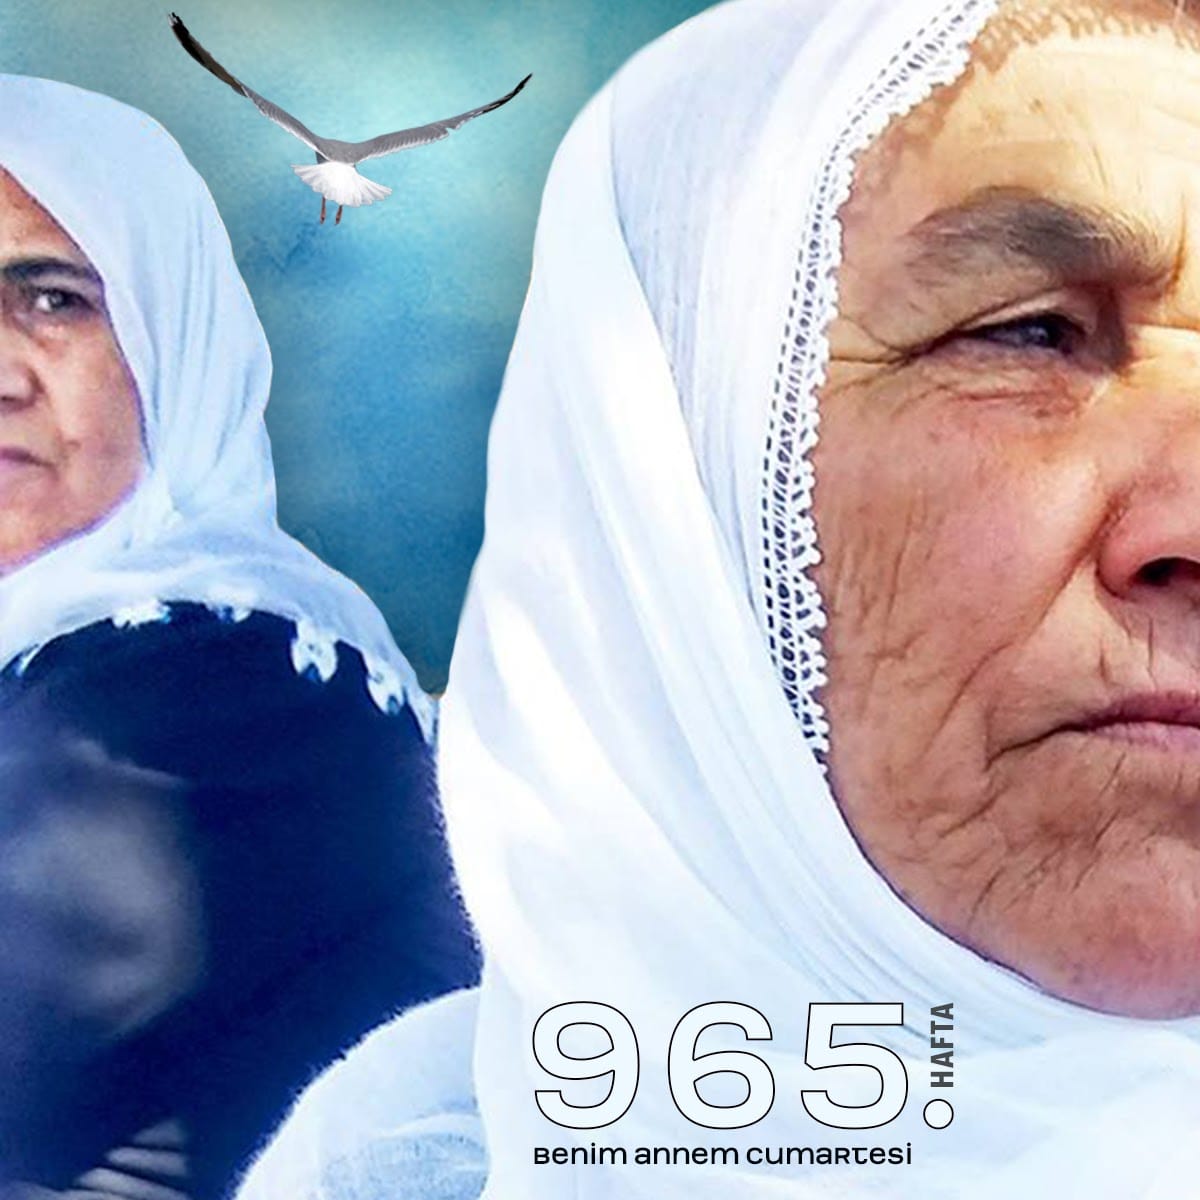 #SonDakika

Cumartesi Anneleri tam 965 haftadır, #İstanbul  Galatasaray Meydanı'nda kayıplarının akıbetini soruyor. 

Cumartesi Anneleri tam 965 haftadır Galatasaray meydanından vazgeçmedi, vazgeçmiyor.

#cumartesianneleri #benimannemcumartesi
#Türkiye